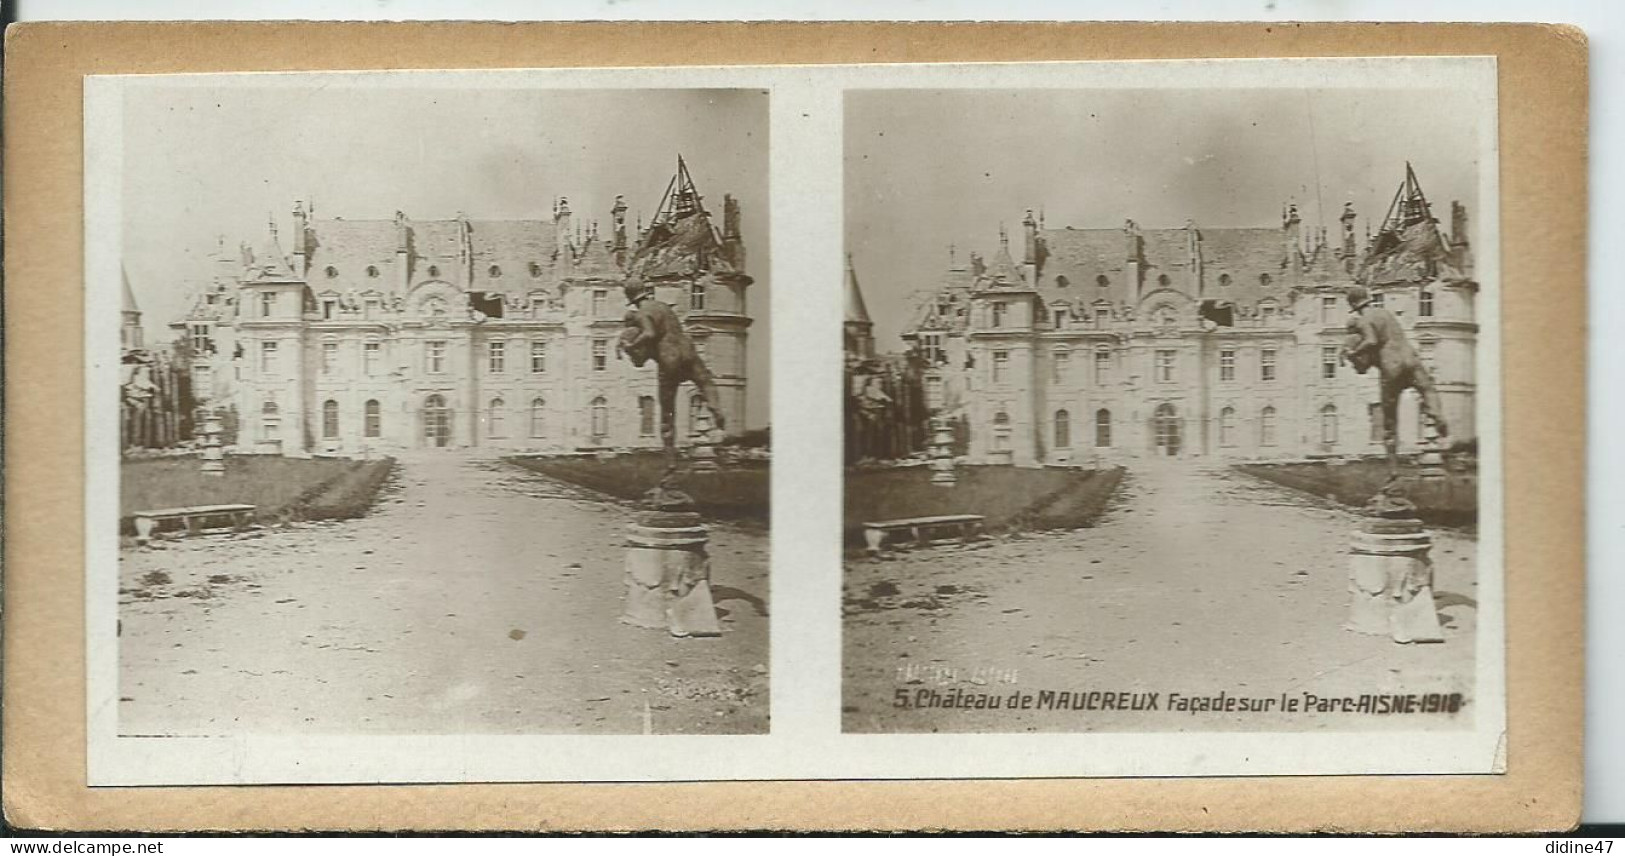 PHOTOS STÉRÉOSCOPIQUES -  Château De MAUCREUX. Façade Sur Le Parc - Stereoscopio